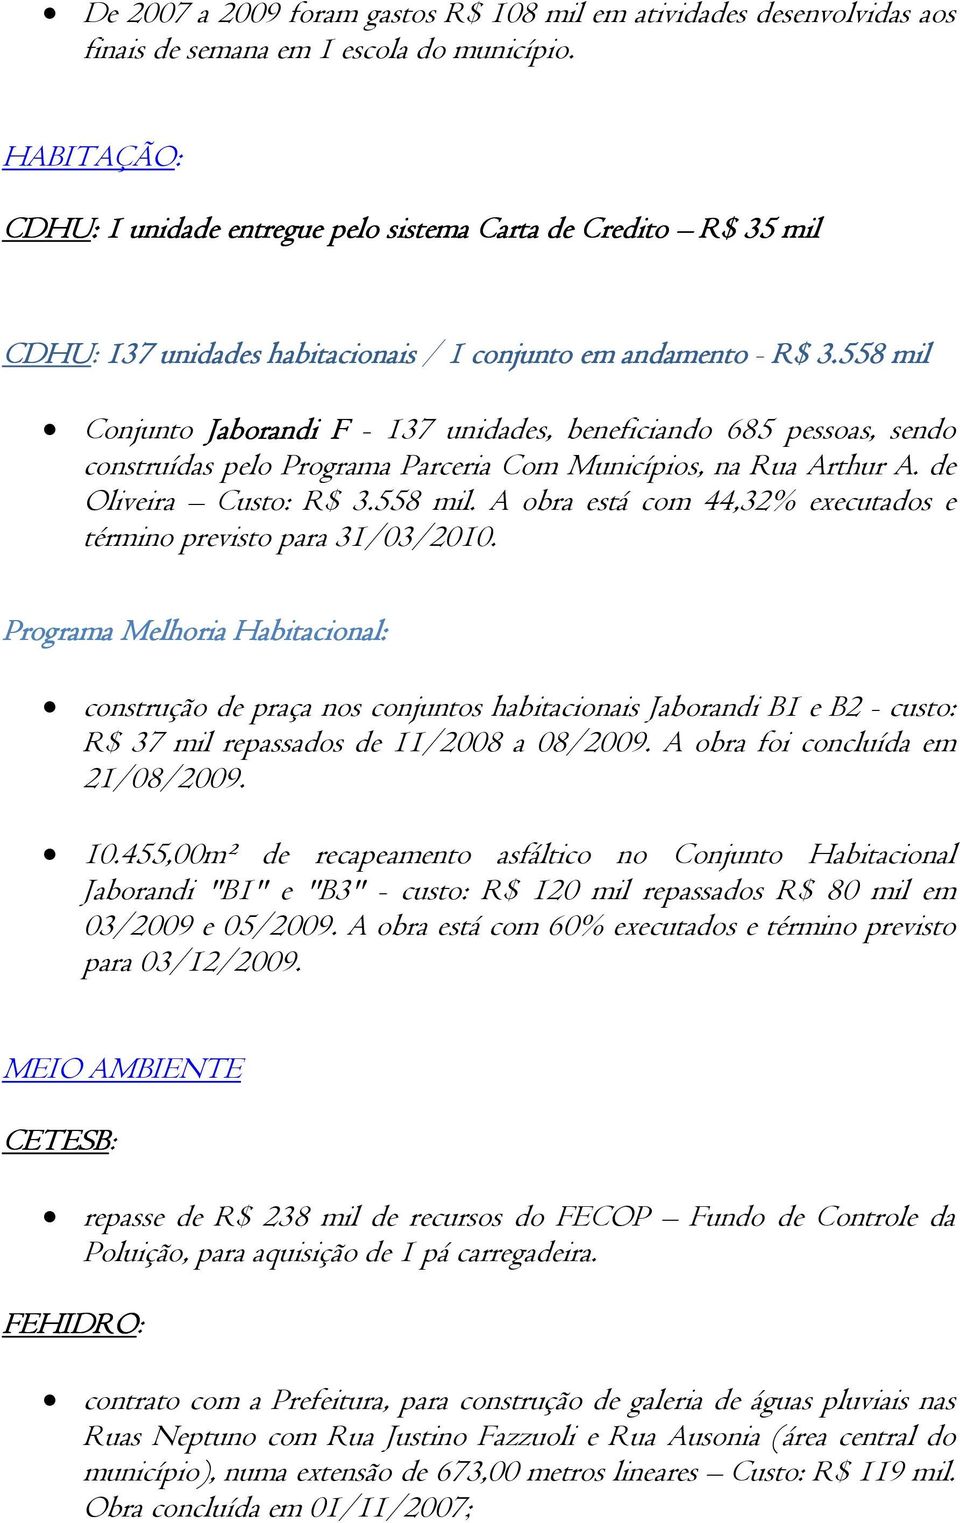 558 mil Conjunto Jaborandi F - 137 unidades, beneficiando 685 pessoas, sendo construídas pelo Programa Parceria Com Municípios, na Rua Arthur A. de Oliveira Custo: R$ 3.558 mil. A obra está com 44,32% executados e término previsto para 31/03/2010.